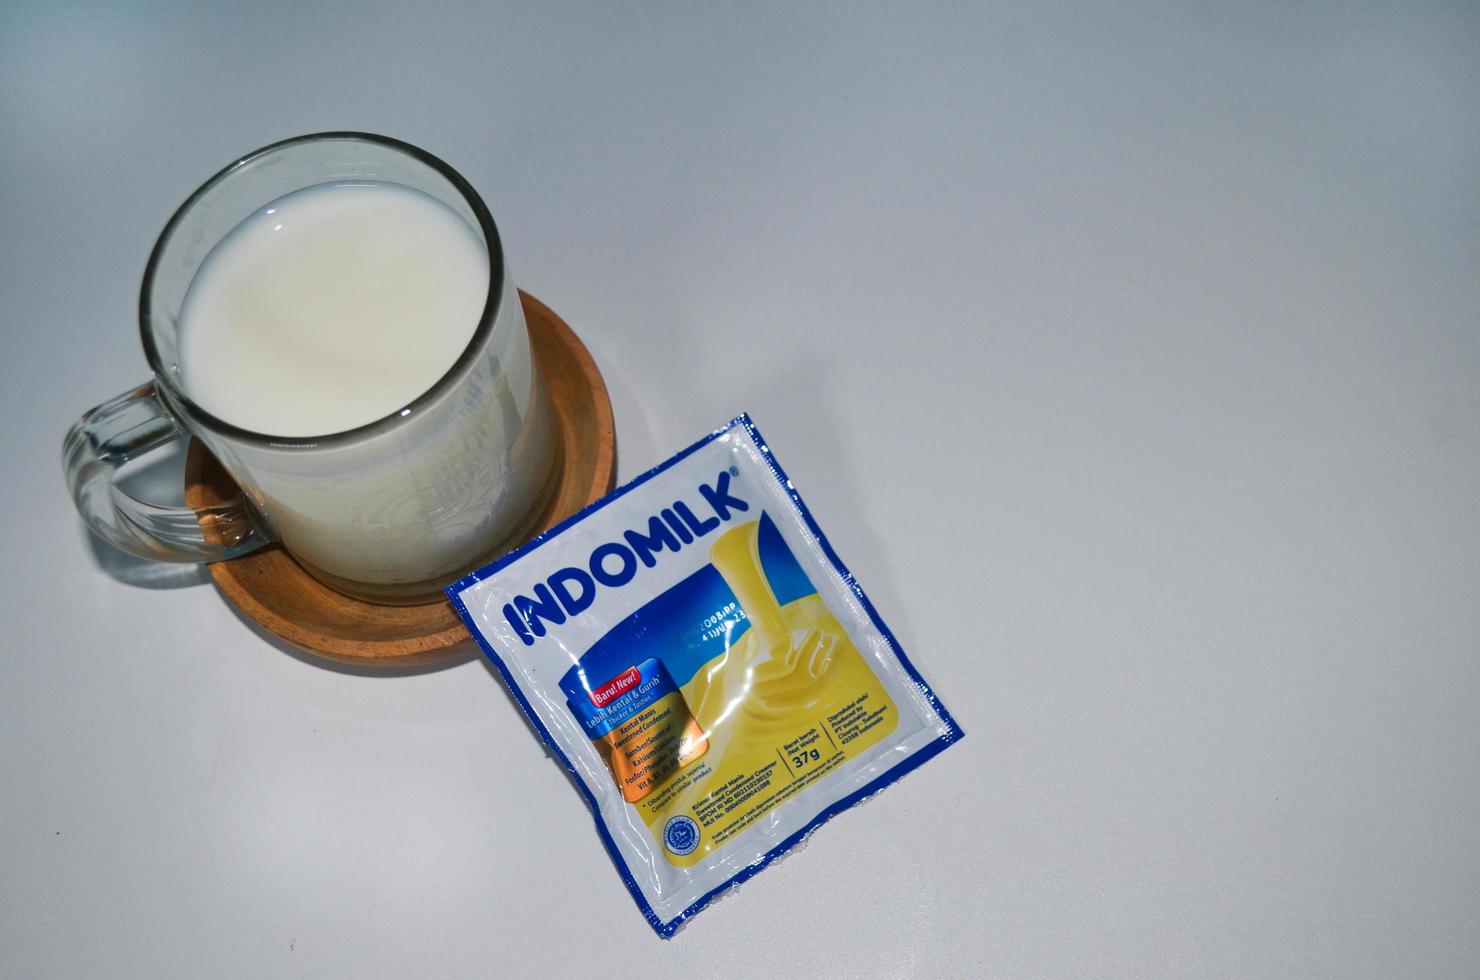 blitar, indonésie - 3 octobre 2022 vue de dessus verre de lait blanc et crémier blanc indomilk en sachet isolé sur fond blanc. copier l'objet de l'espace photo